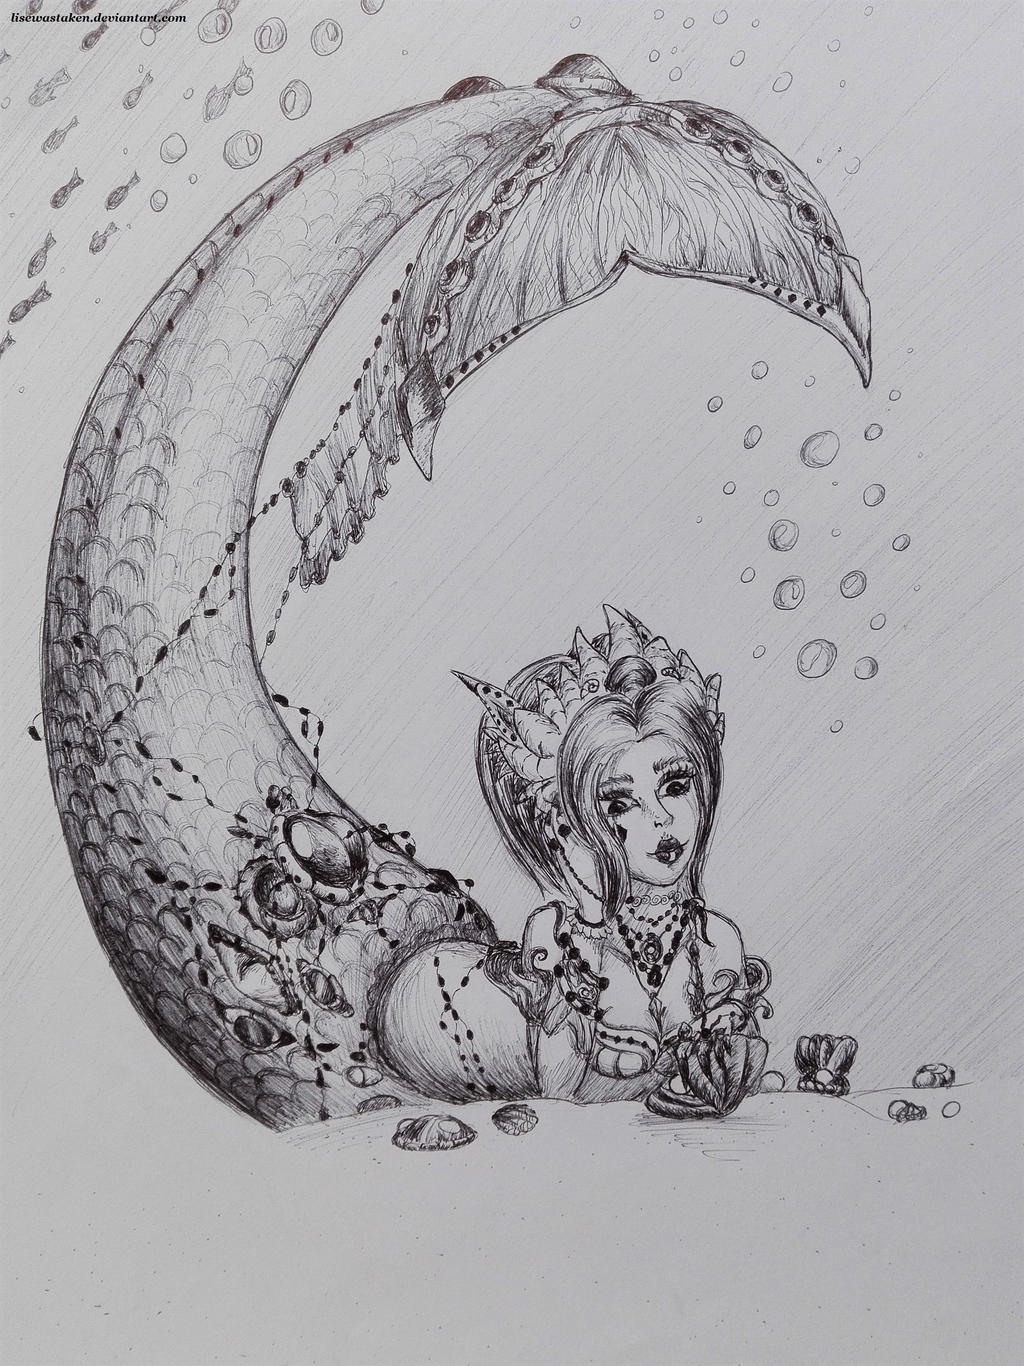 Mermaid series: 5